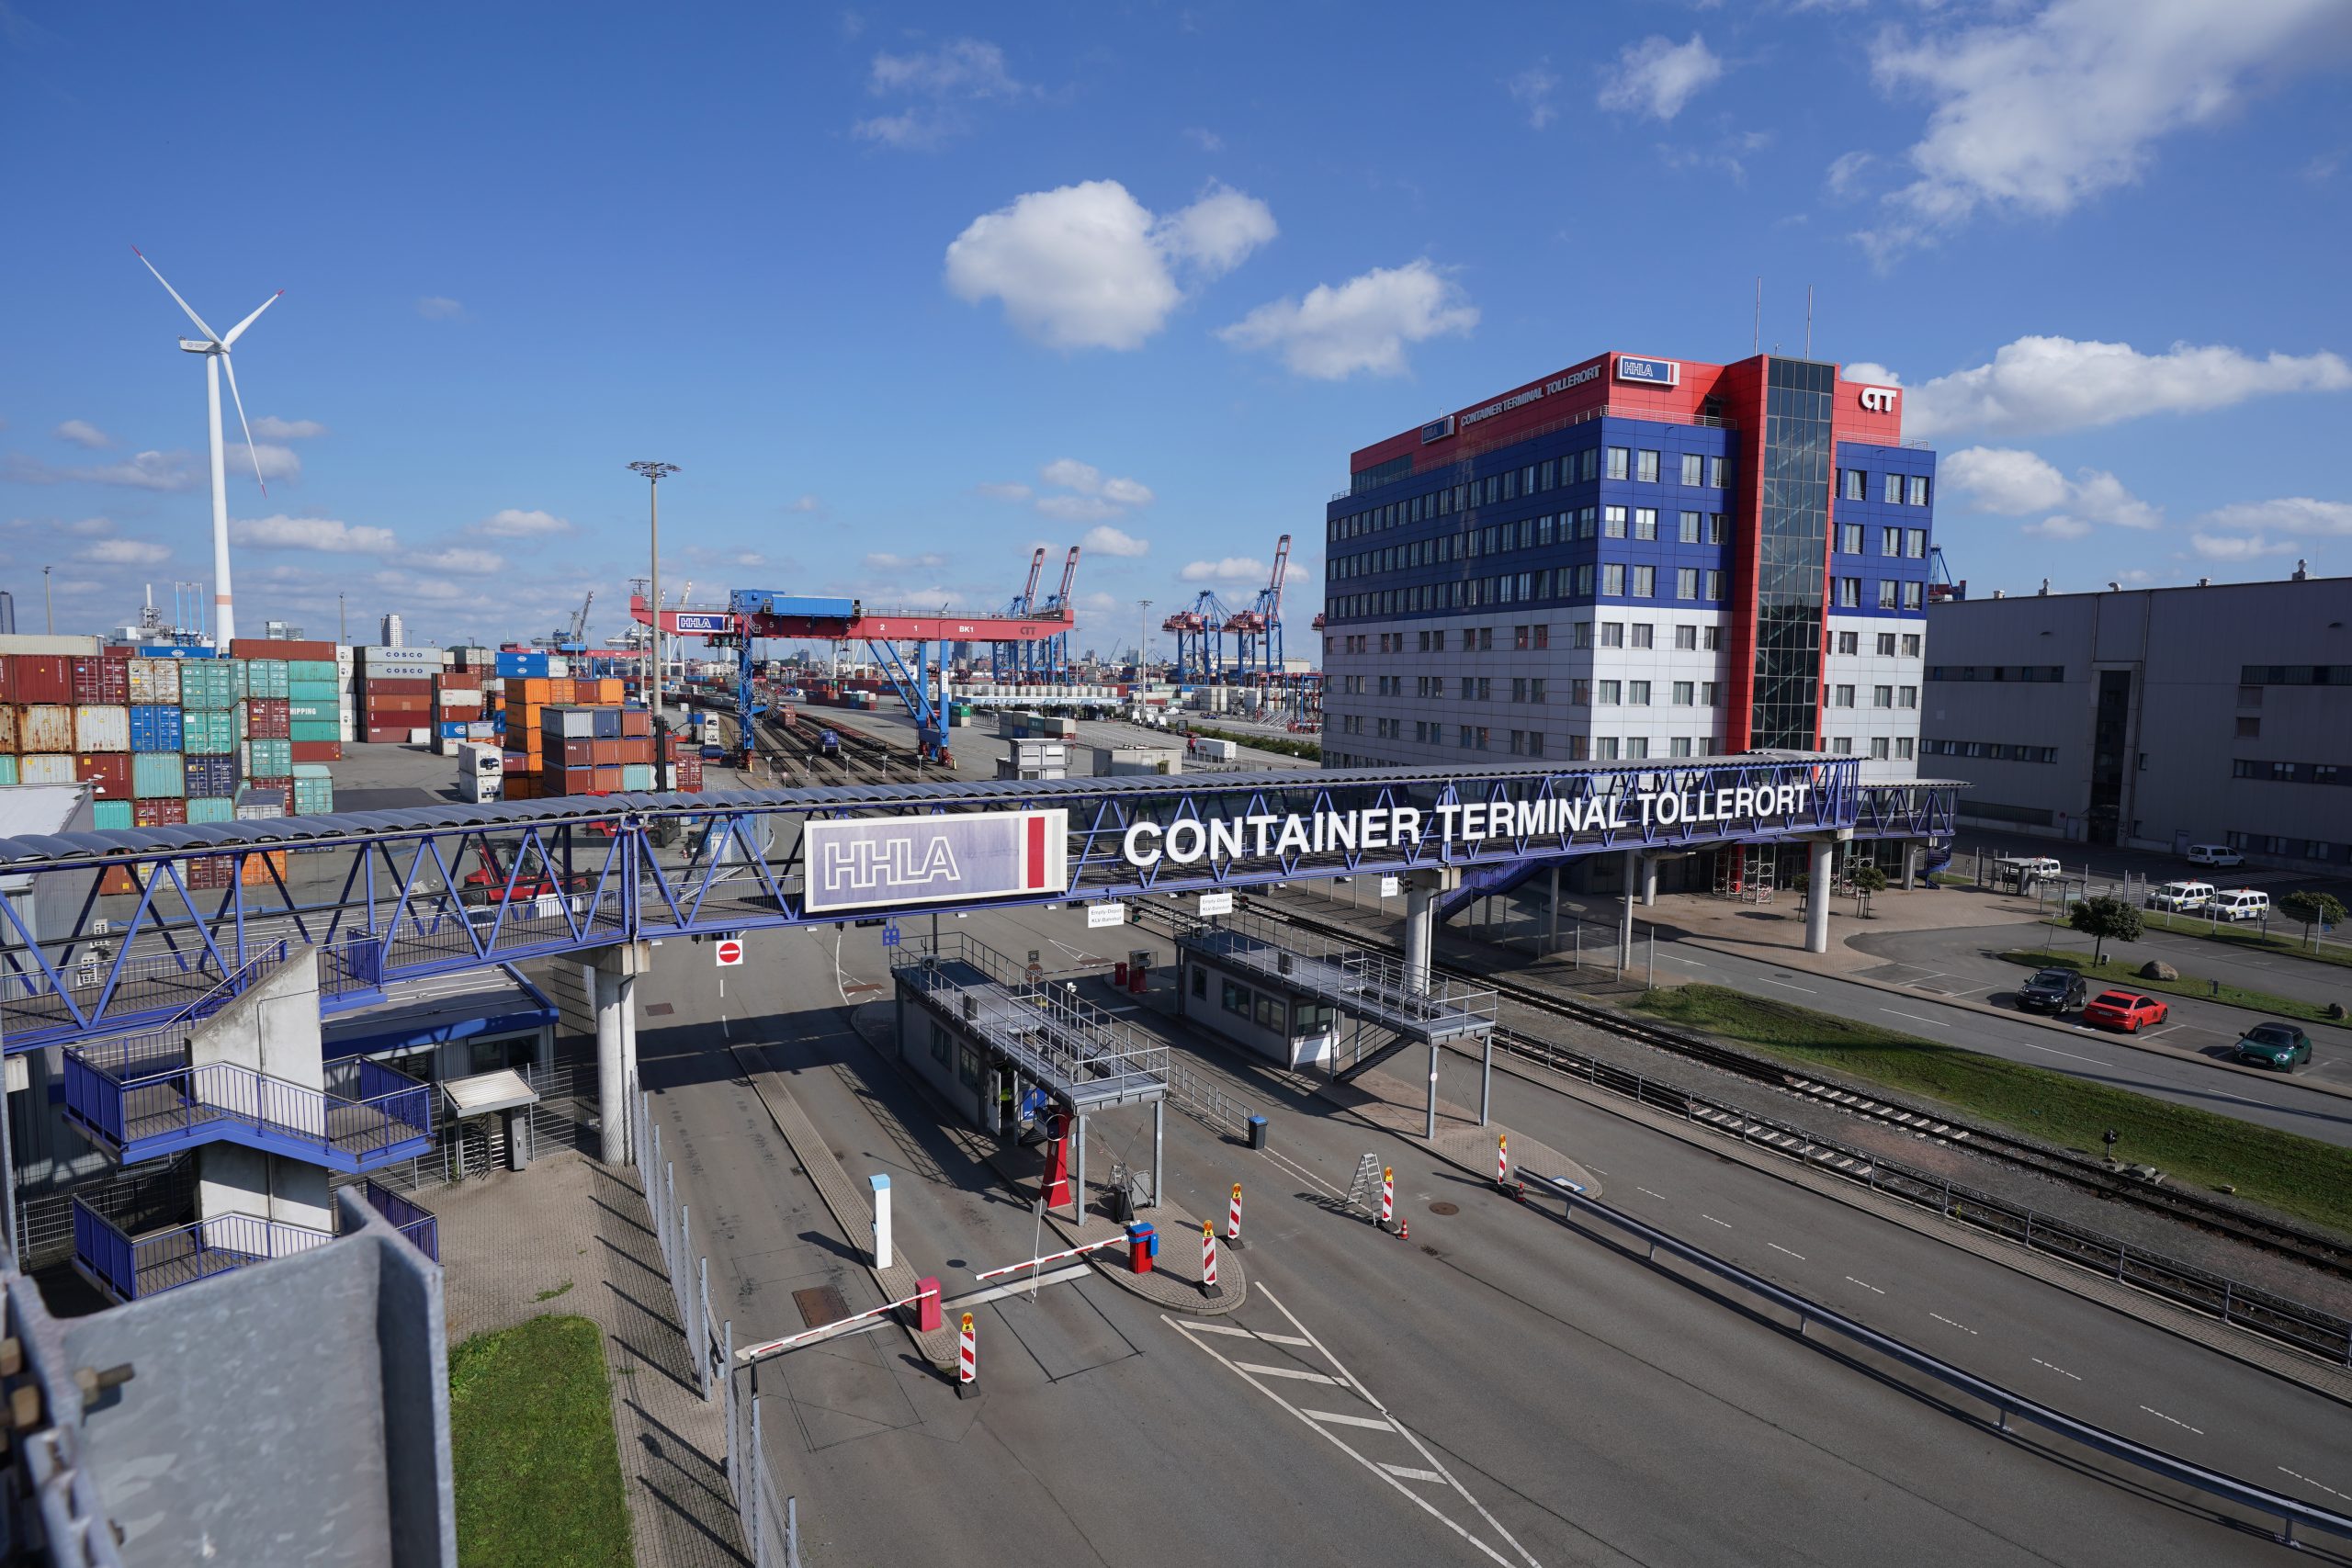 Container Terminal Tollerort Hamburger Hafen Sonnenschein Wolken